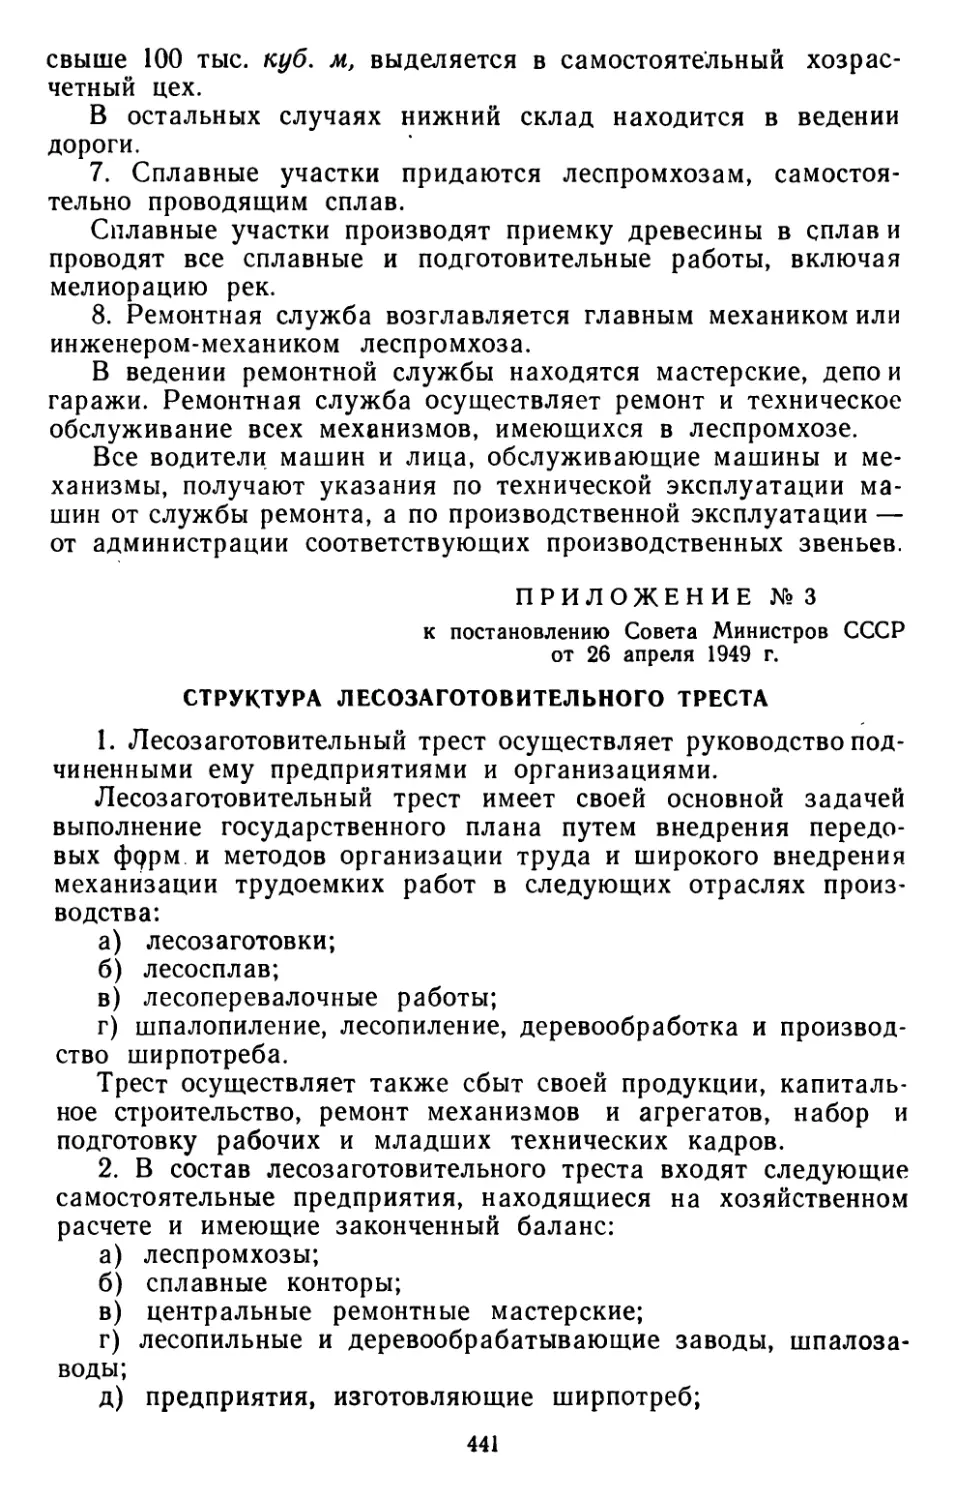 Структура лесозаготовительного треста. Приложение № 3 к постановлению Совета Министров СССР от 26 апреля 1949 г